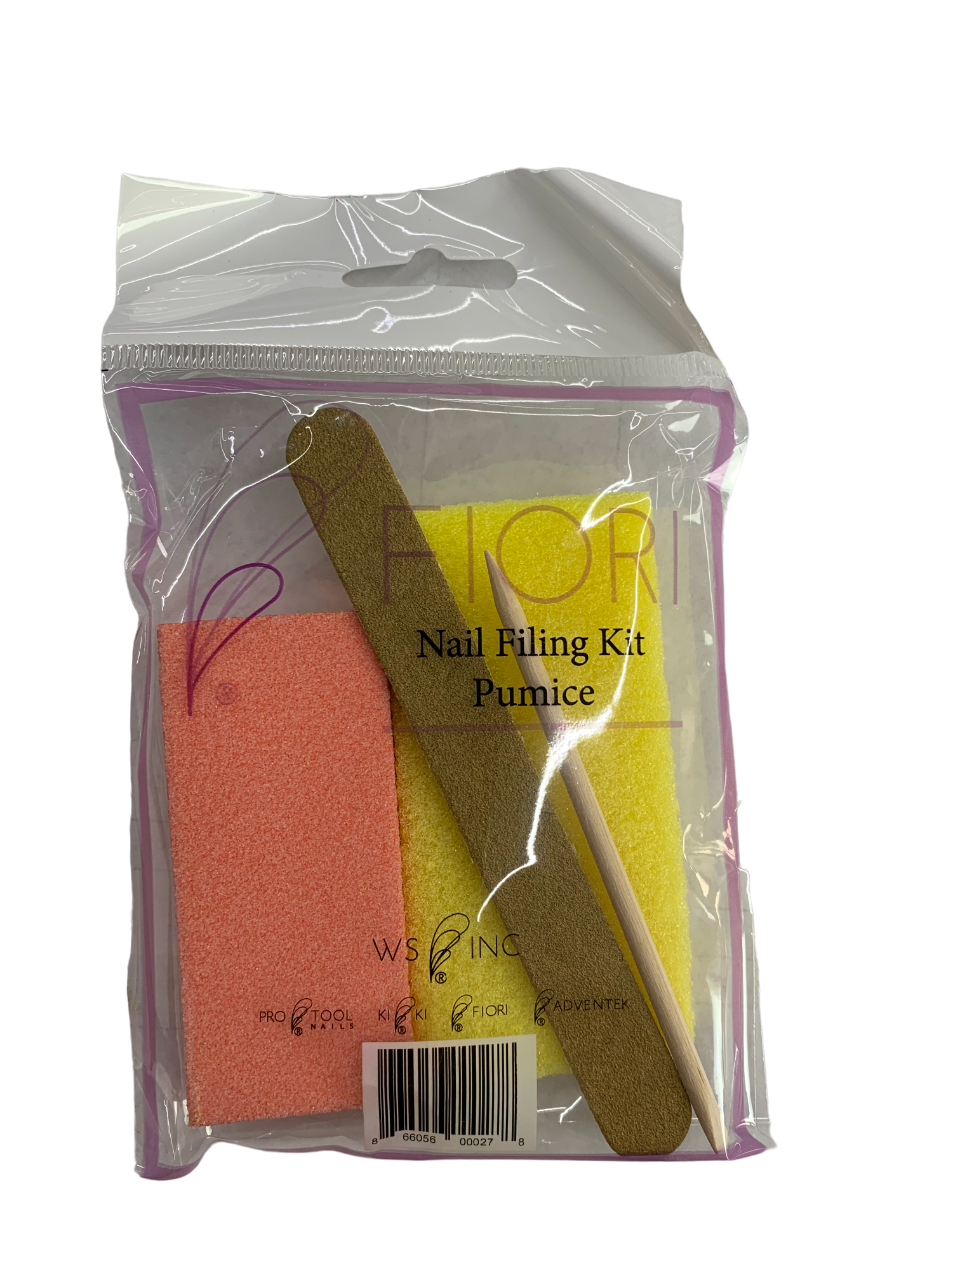 Fiori Nail Filing Kit Pumice 4pcs